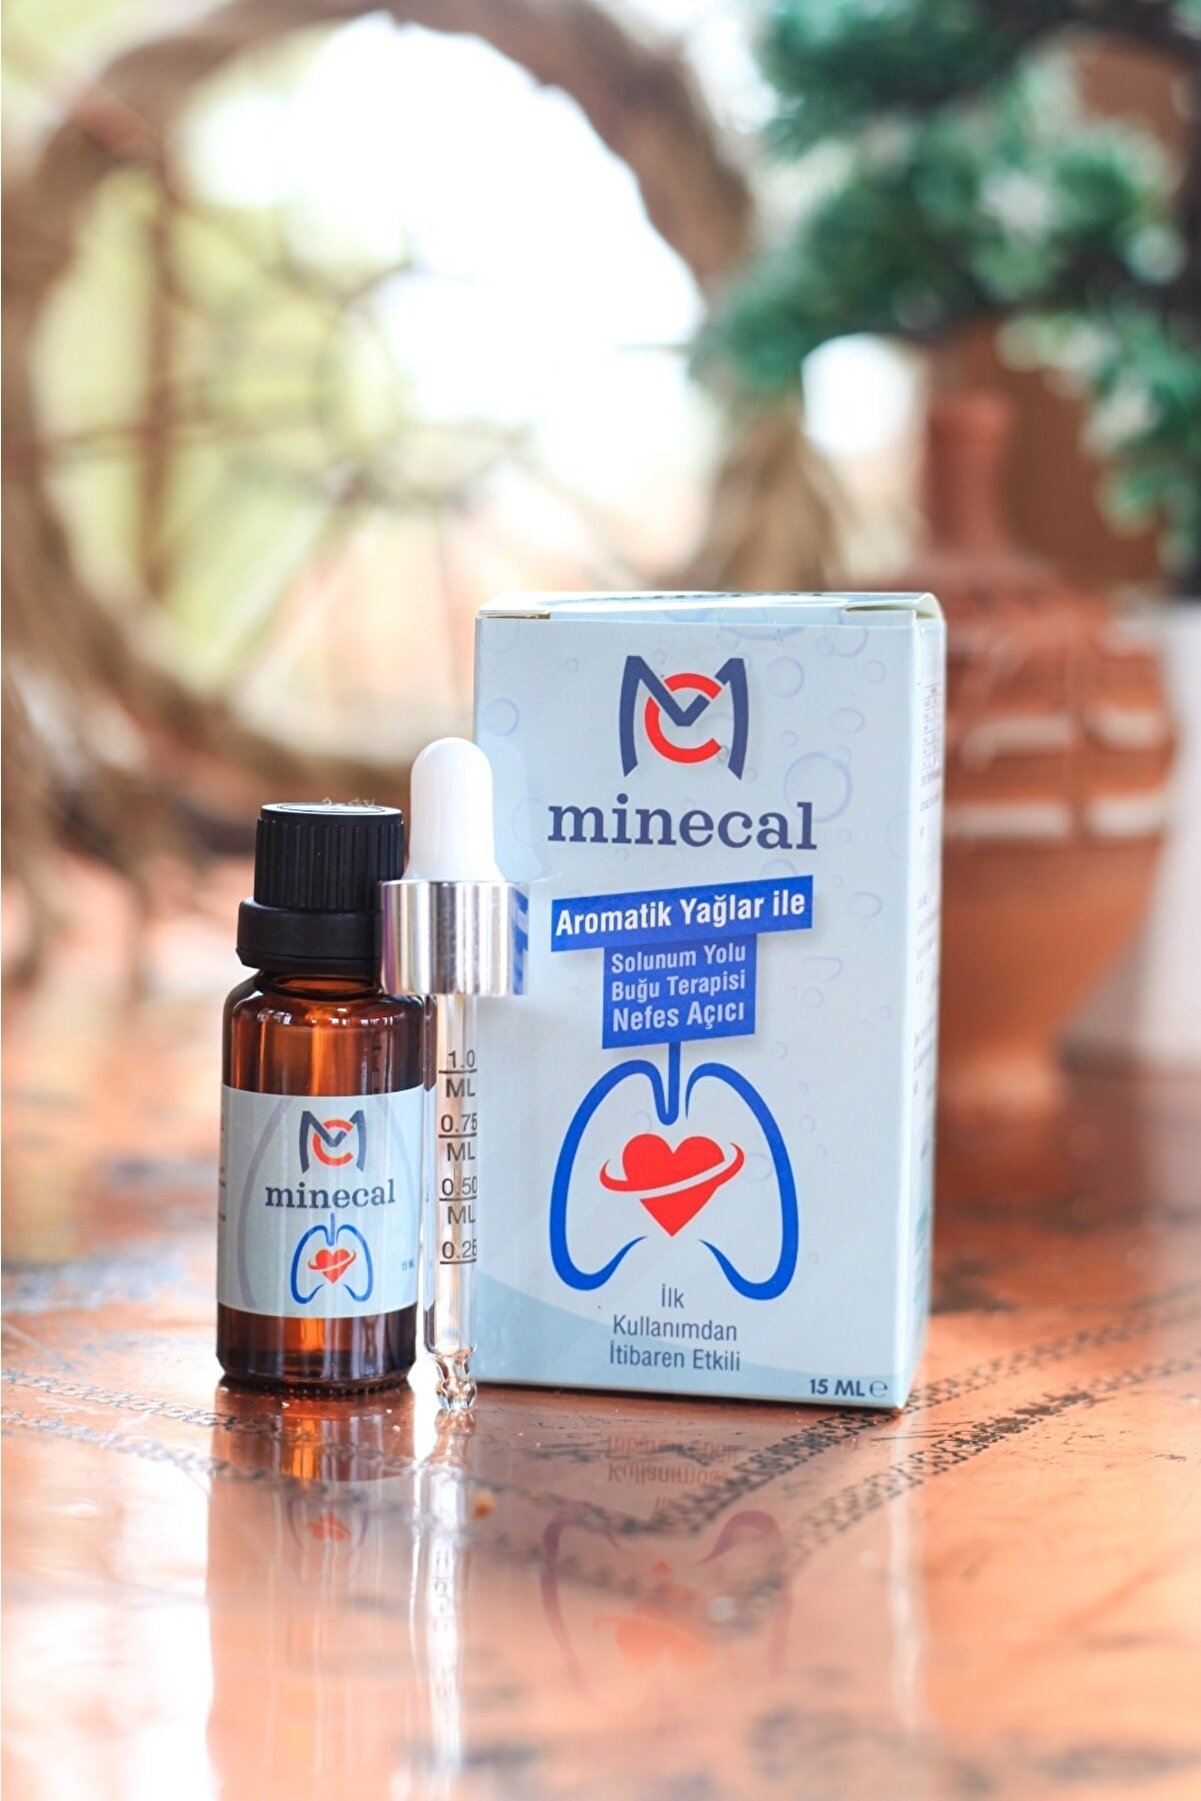 Minecal Aromatik Yağlar Ile Buğu Terapi Ve Nefes Açıcı